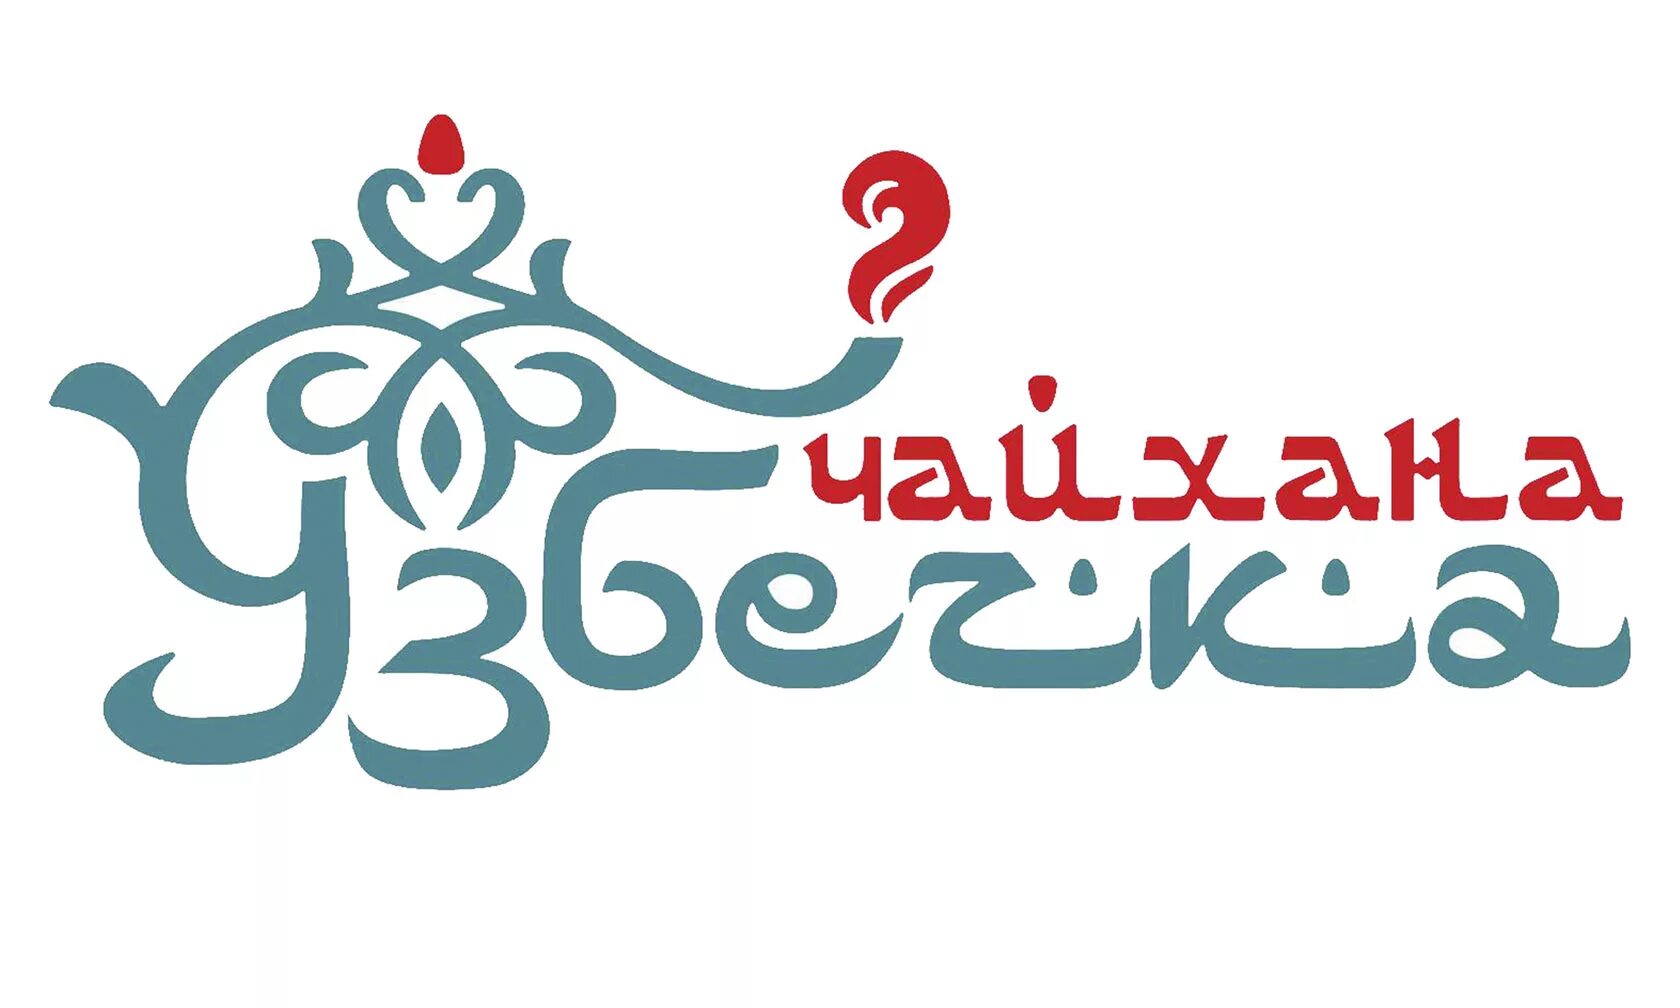 Чайхана логотип. Логотип узбекской кухни. Логотип восточного ресторана. Чайхана вывеска. Чайхана исфар